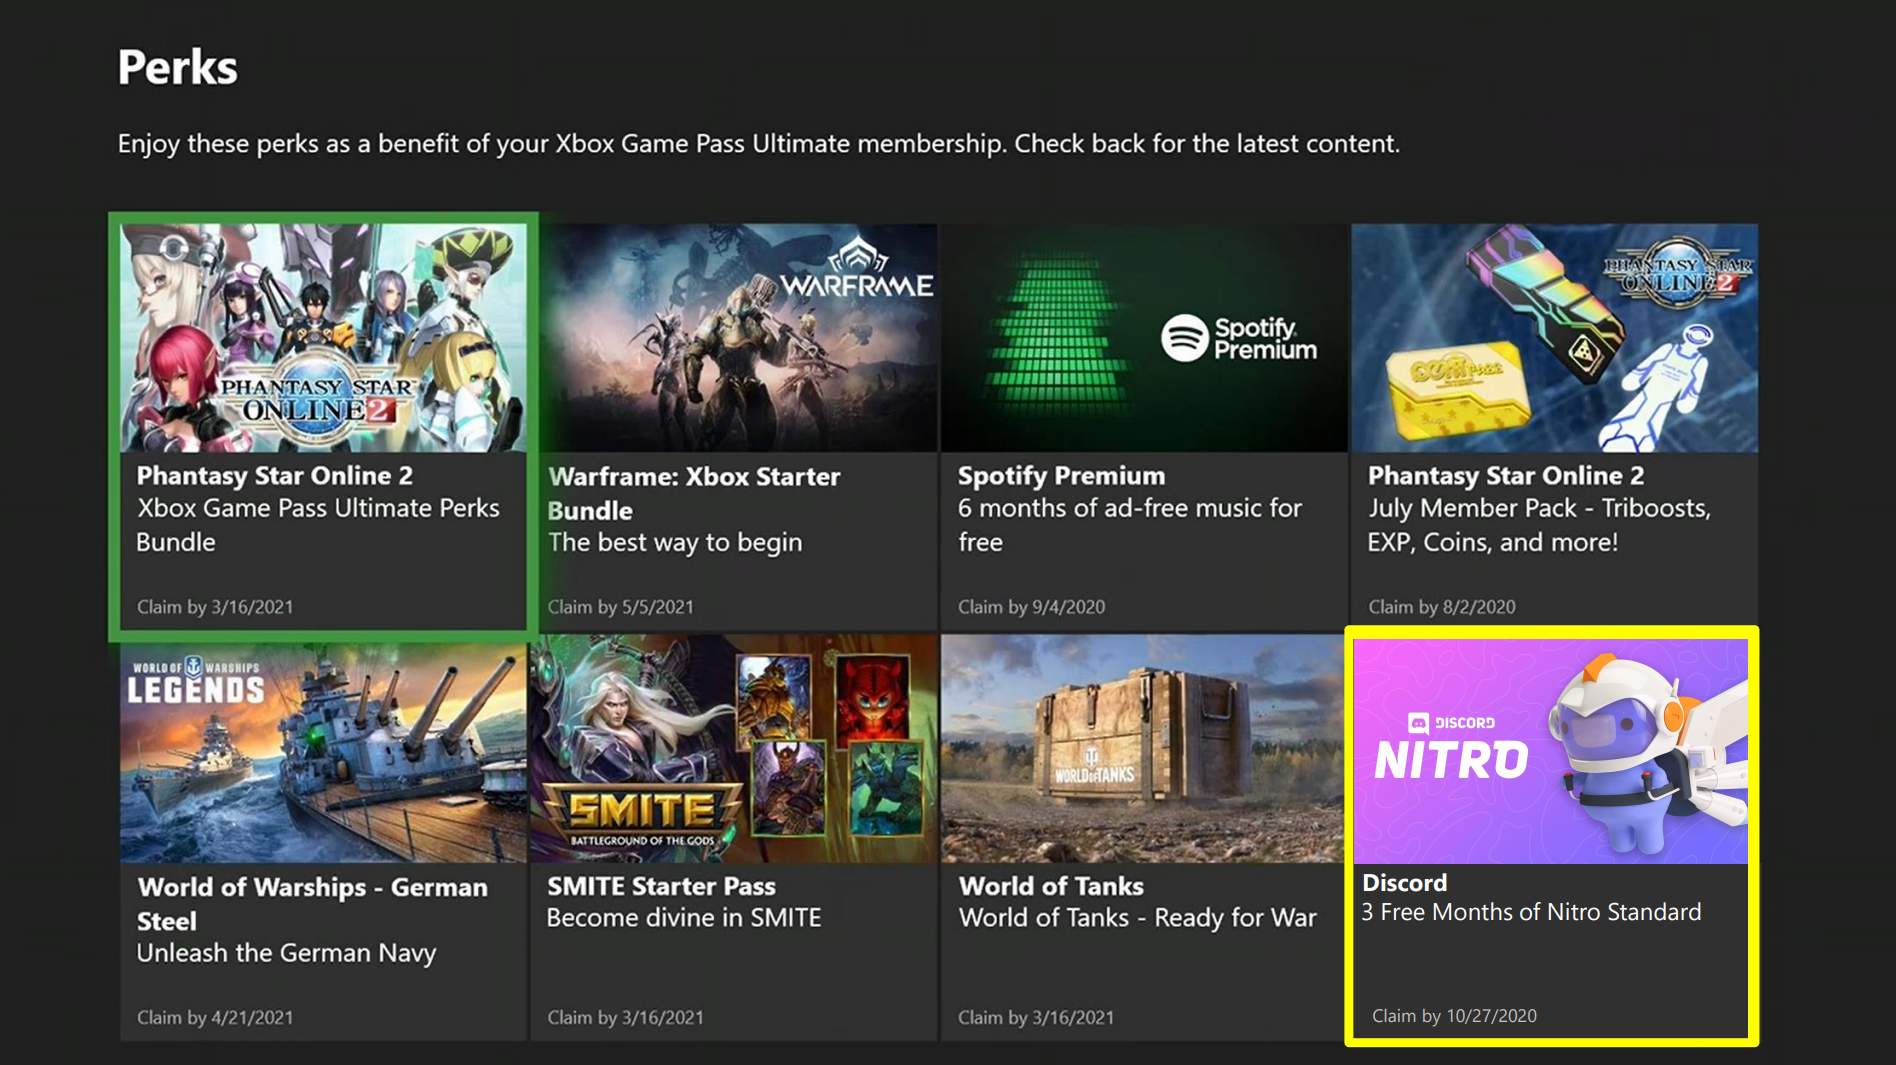 Consigue 3 Meses De Nitro Con Xbox Game Pass Ultimate Discord